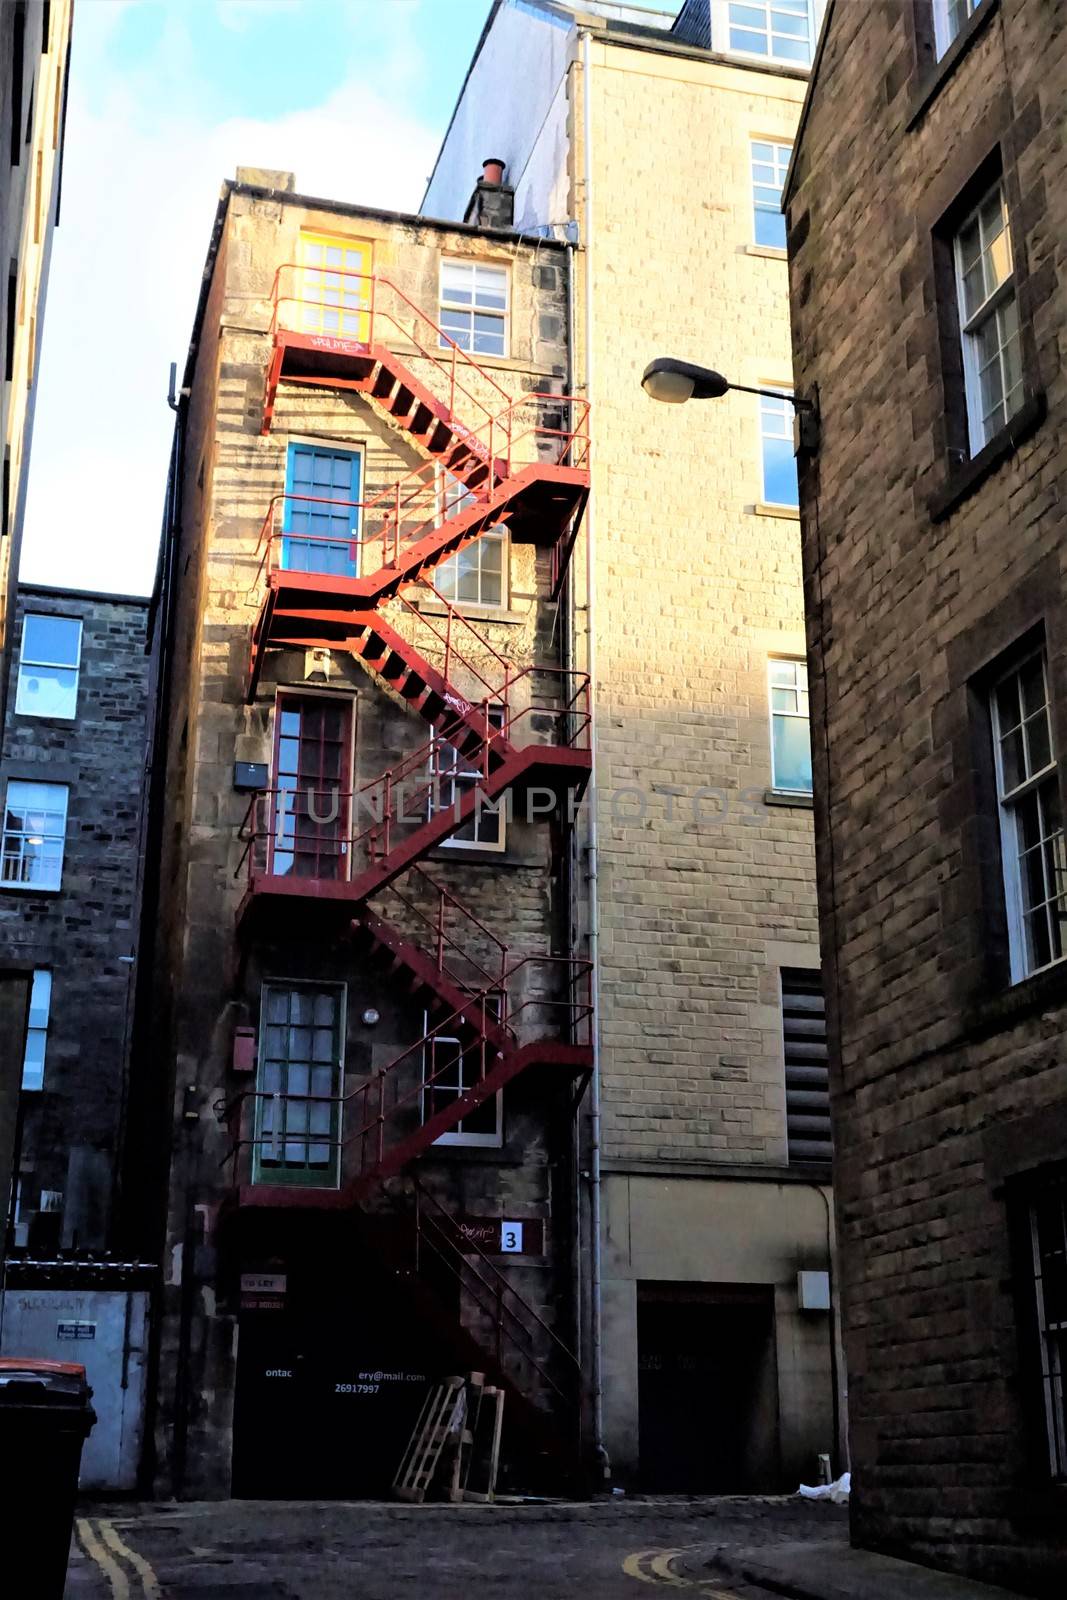 Brick house with fire escape in Edinburgh, Scotland